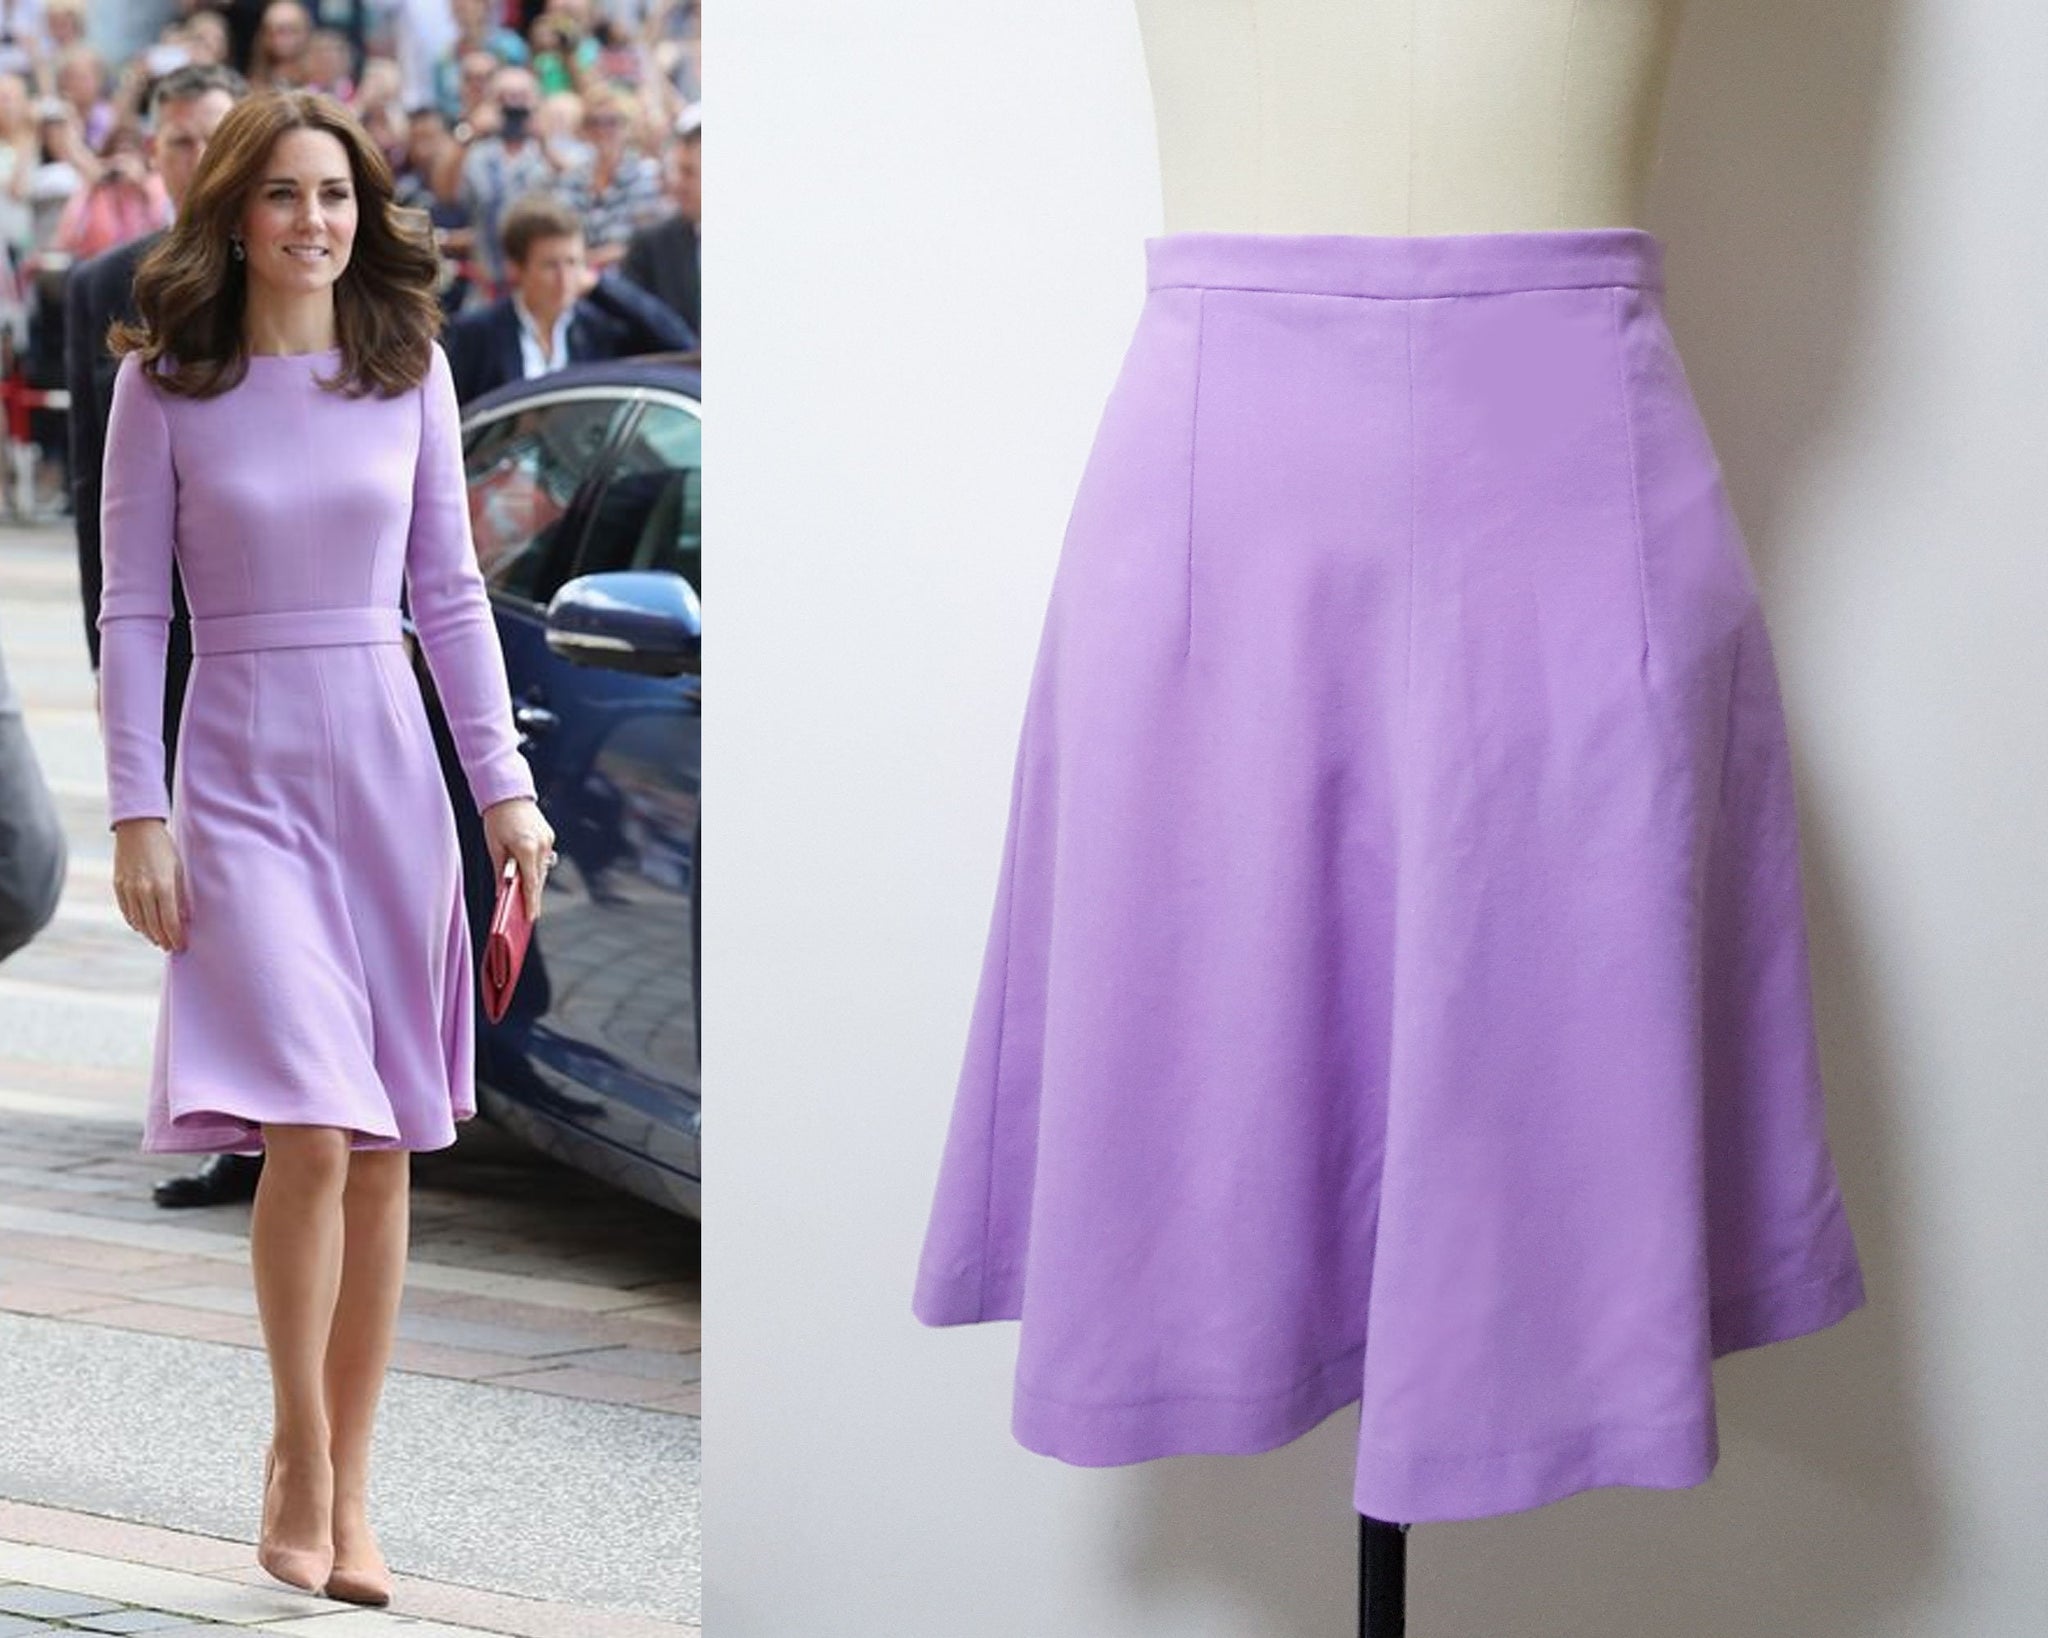 Duchess Cambridge inspired purple swing skirt lilac wool crepe skirt size Small skirt SALE Kate Middleton inspired Lavender skirt